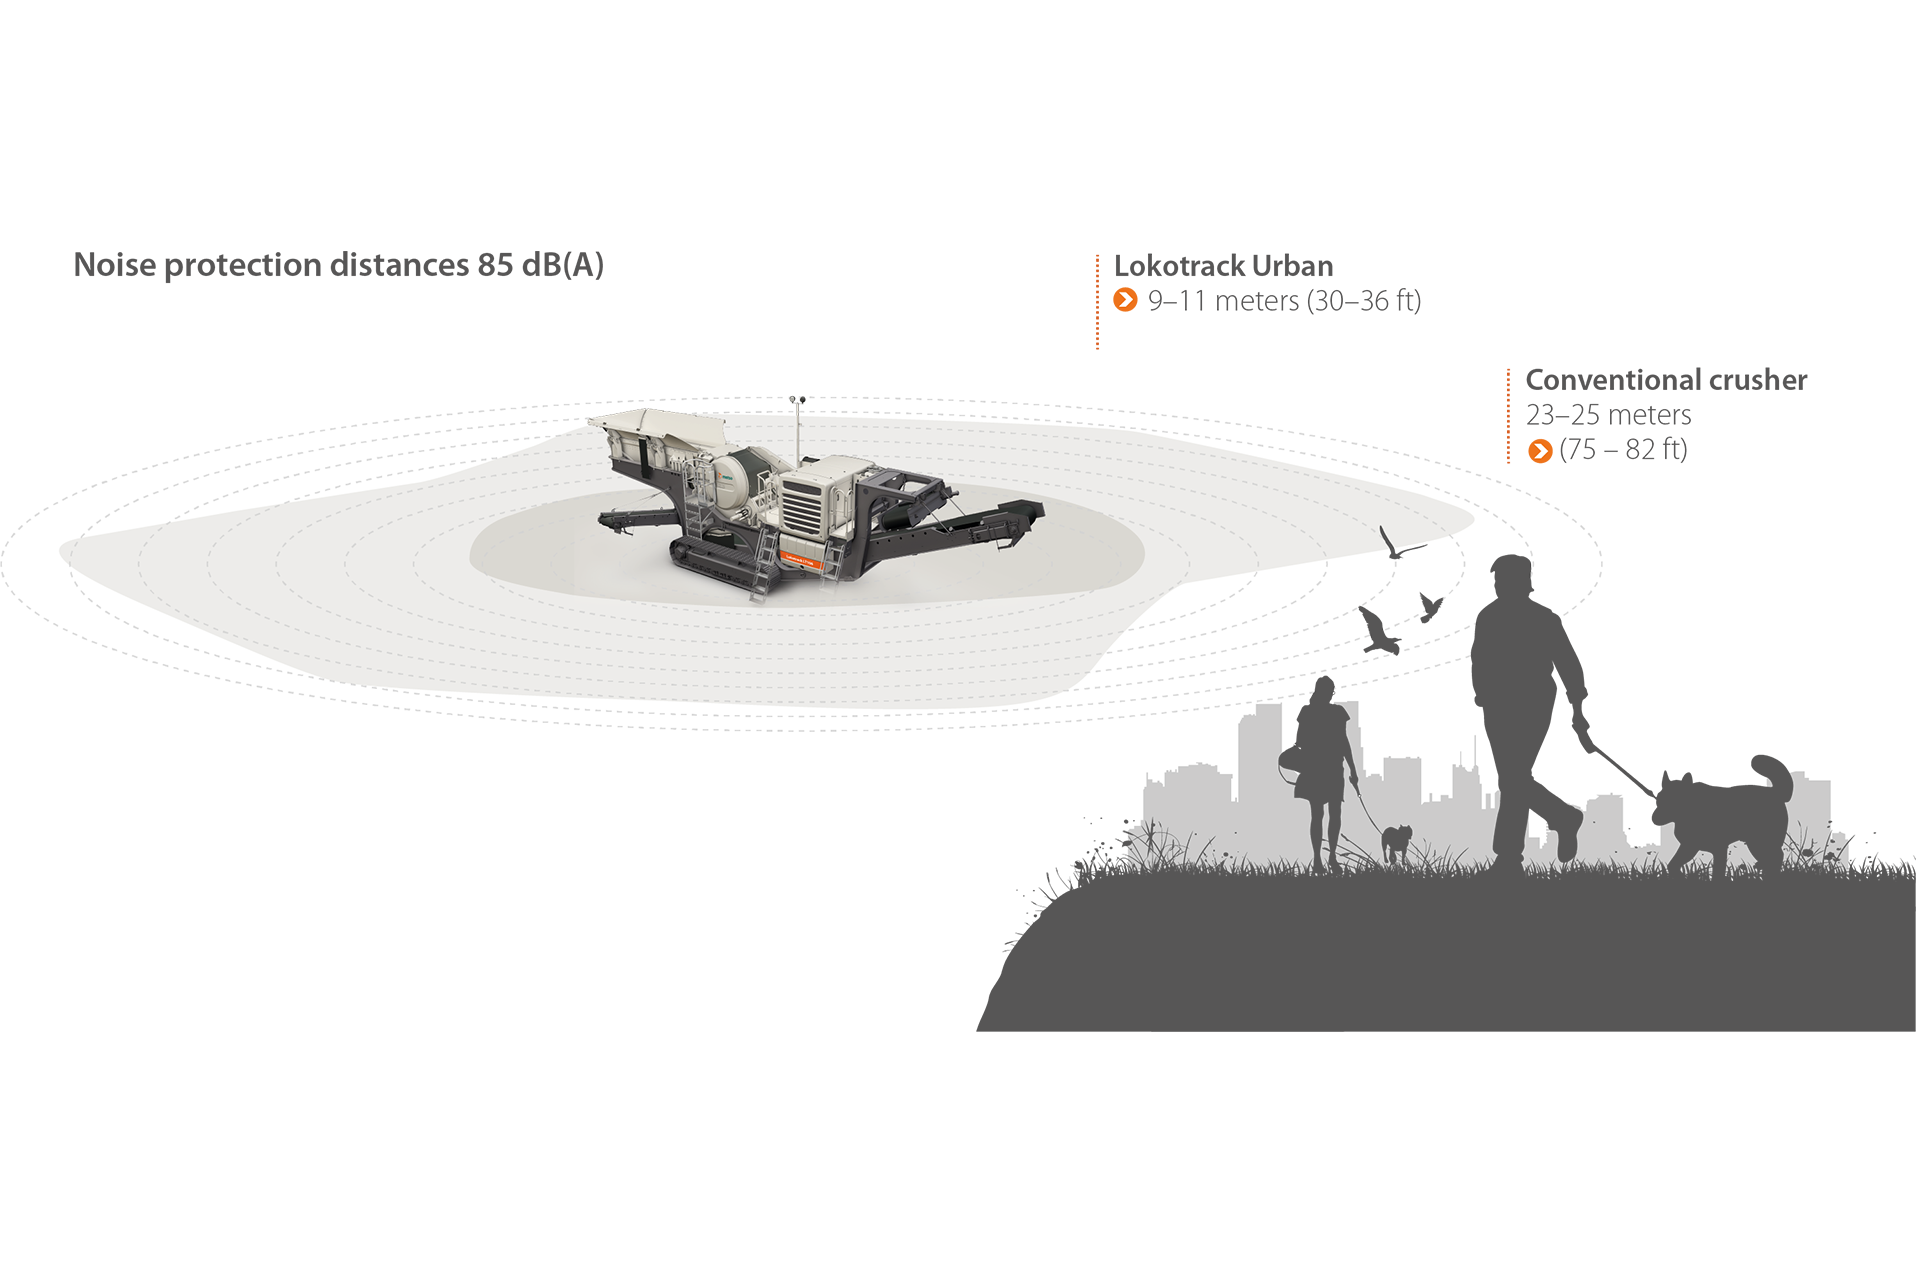 Figura que representa la capacidad de Lokotrack Urban para reducir la distancia del ruido de trituración en comparación con la trituradora convencional